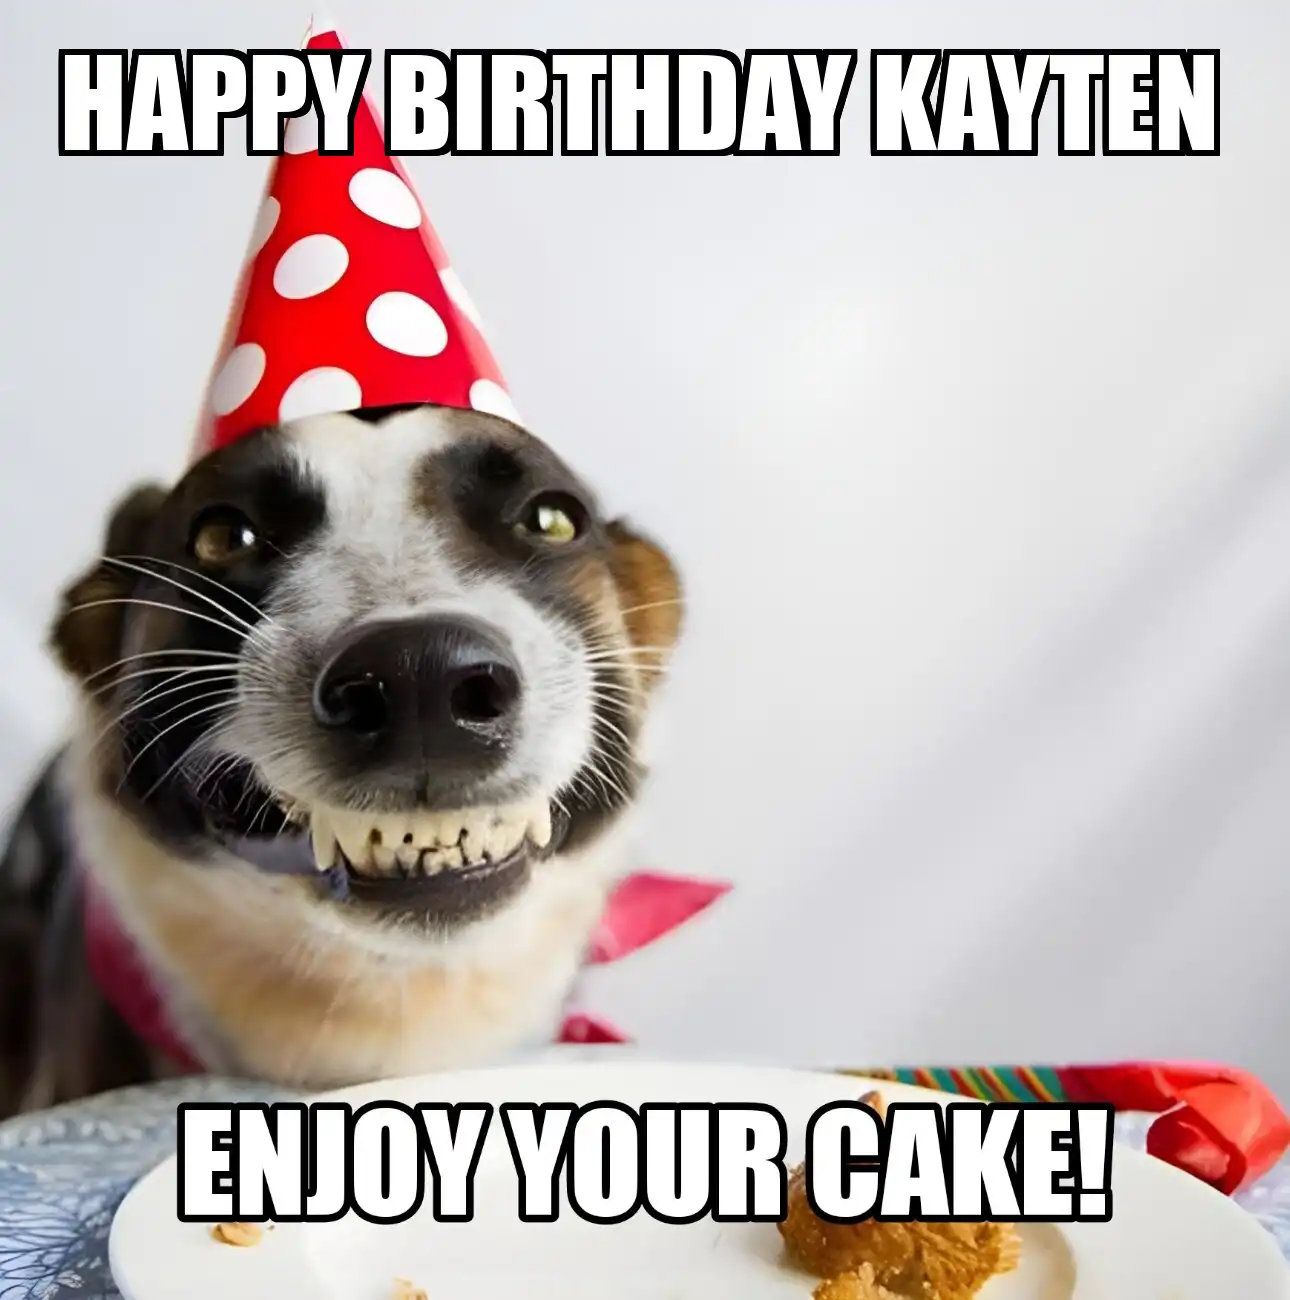 Happy Birthday Kayten Enjoy Your Cake Dog Meme